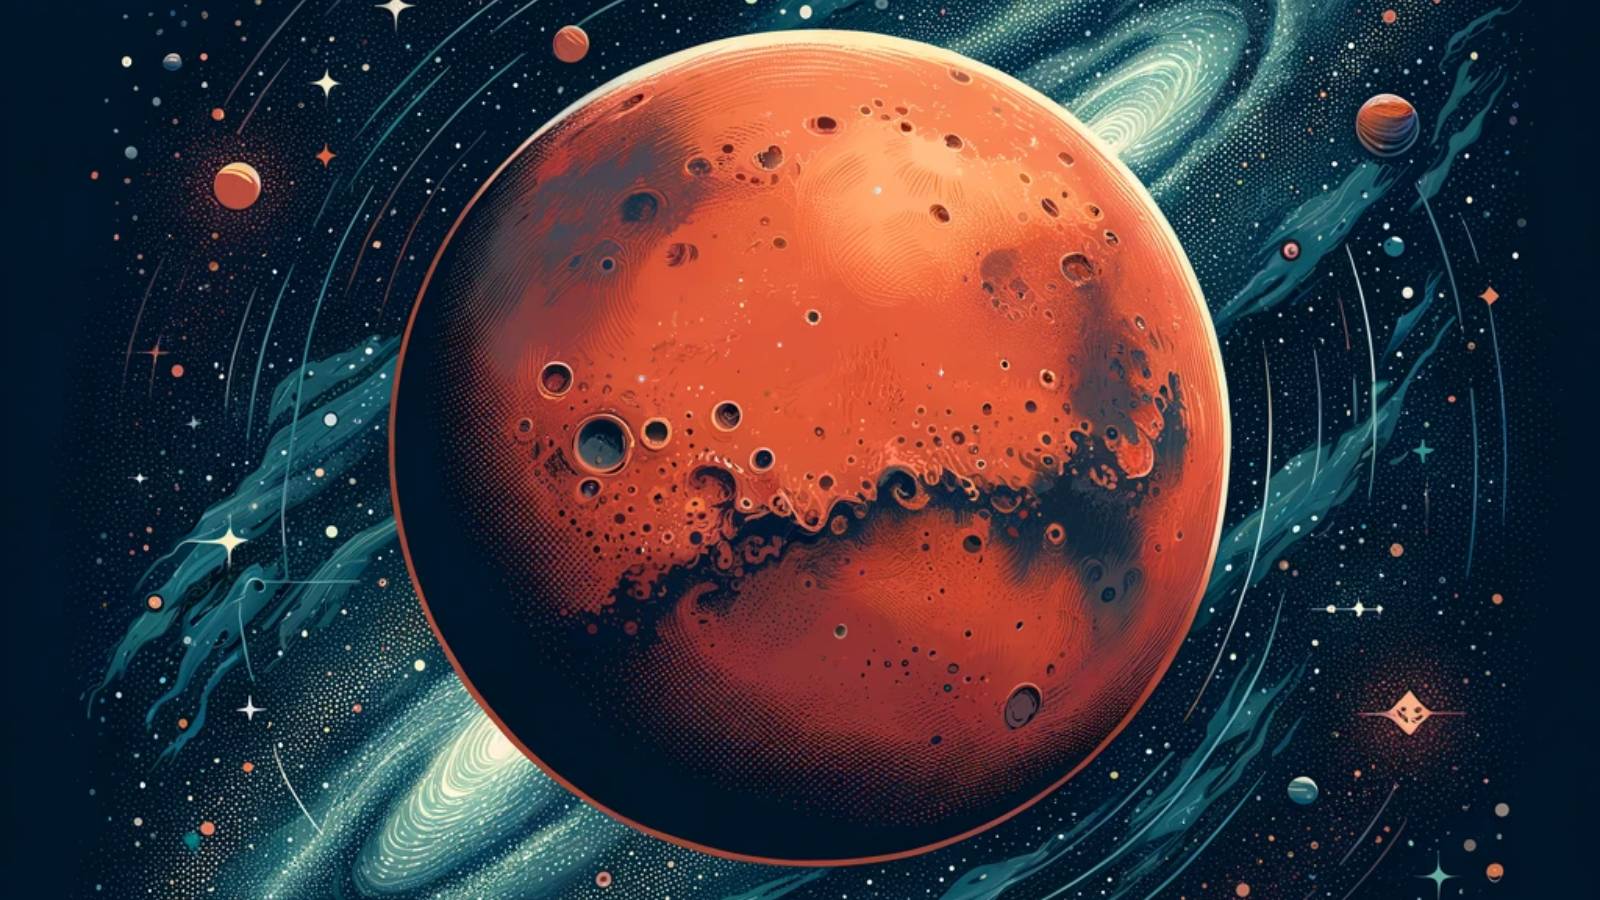 NASA FANTASTISK UPPTÄCKT Planeten Mars observerad av forskare